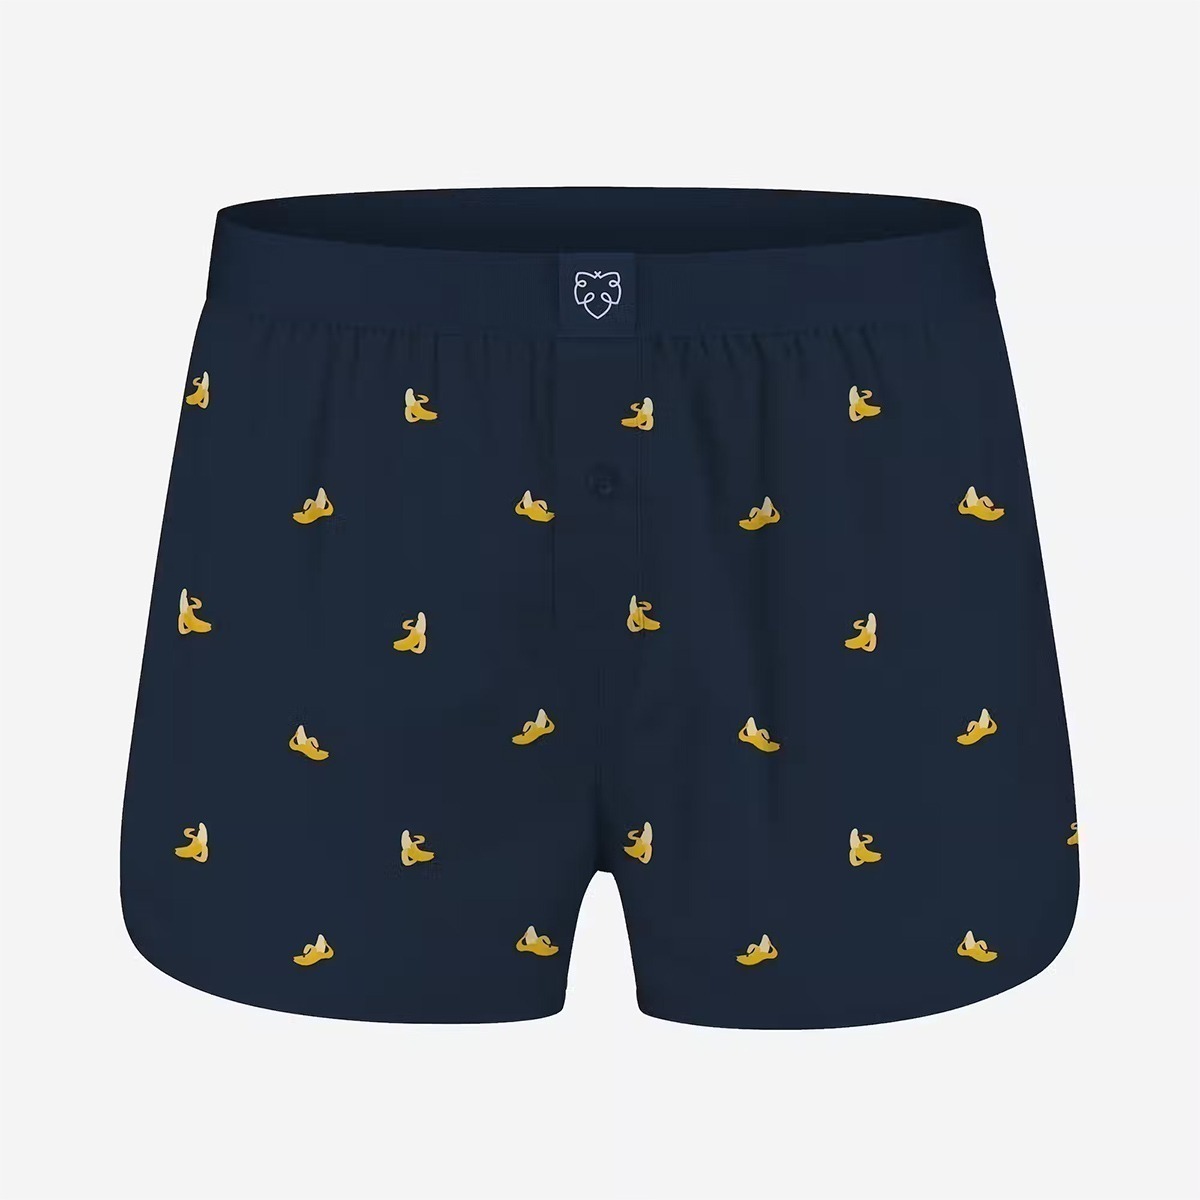 a-dam underwear boxer shorts mit Bananen